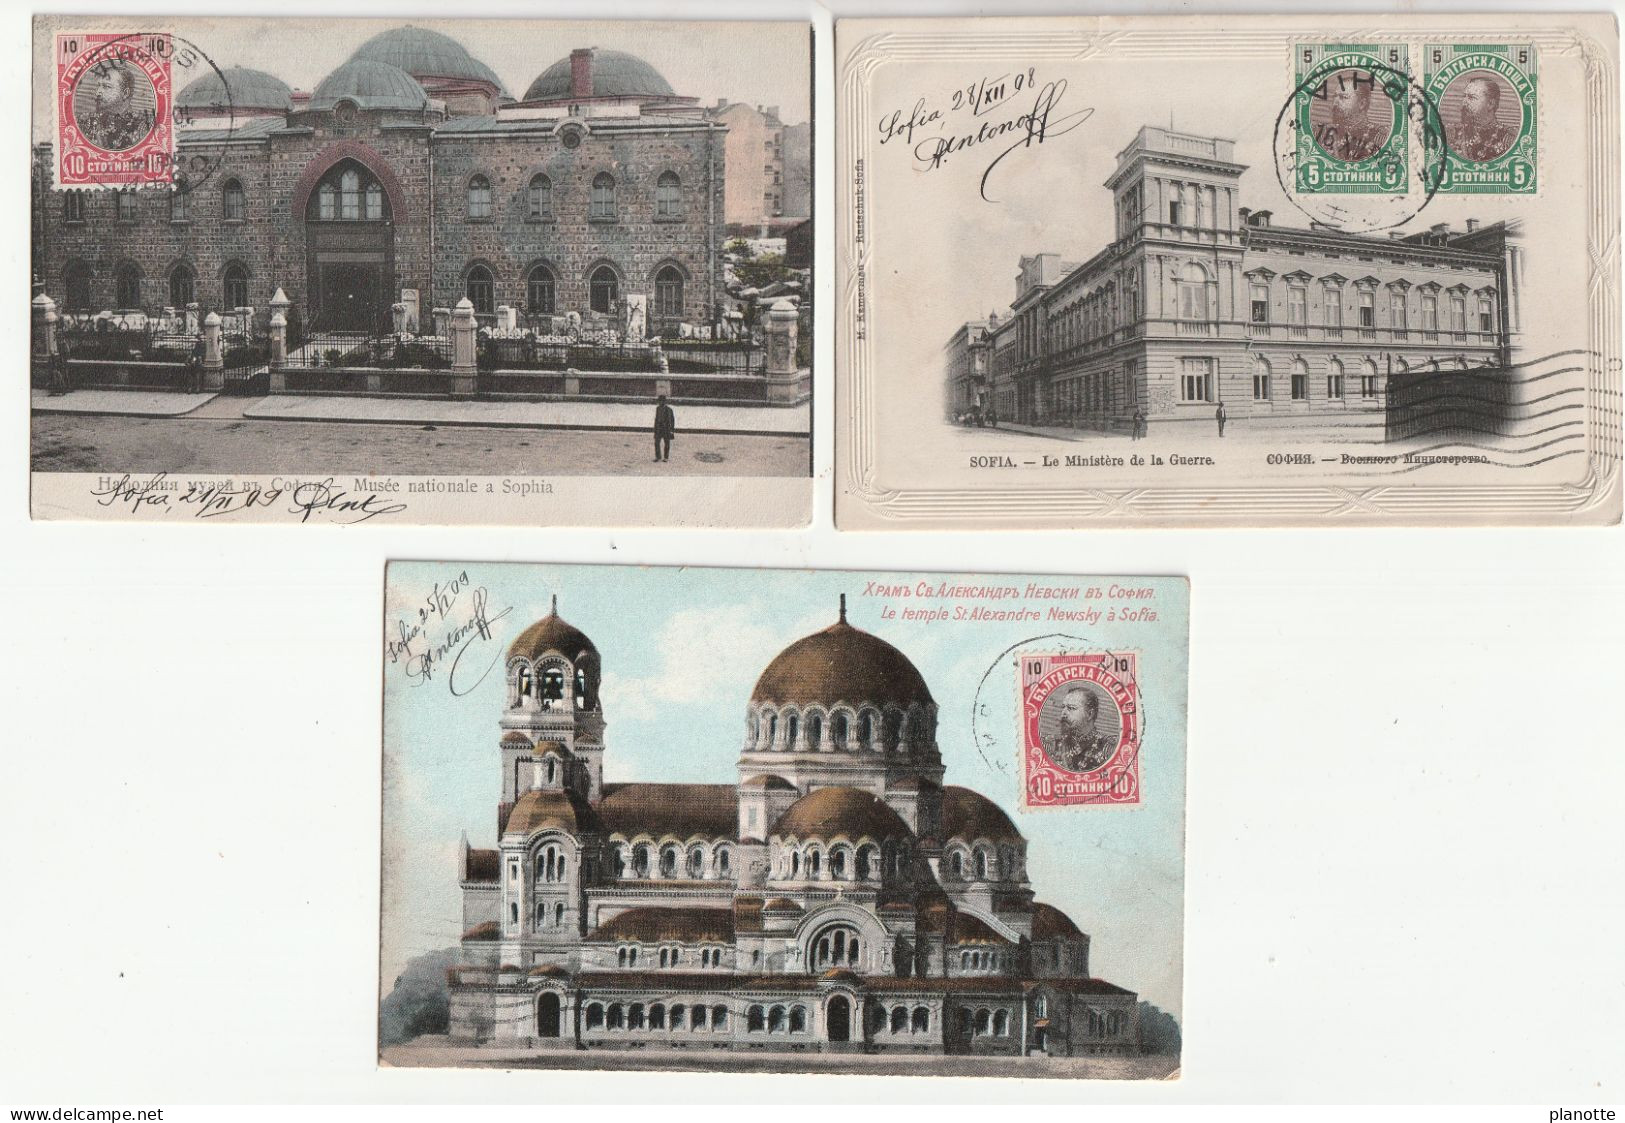 BULGARIA -  SOFIA - 3 Old Pc 1900/10s - Ministere De La Guerre / Musée Nationale / Temple St Alexandre Newsky - Bulgarien